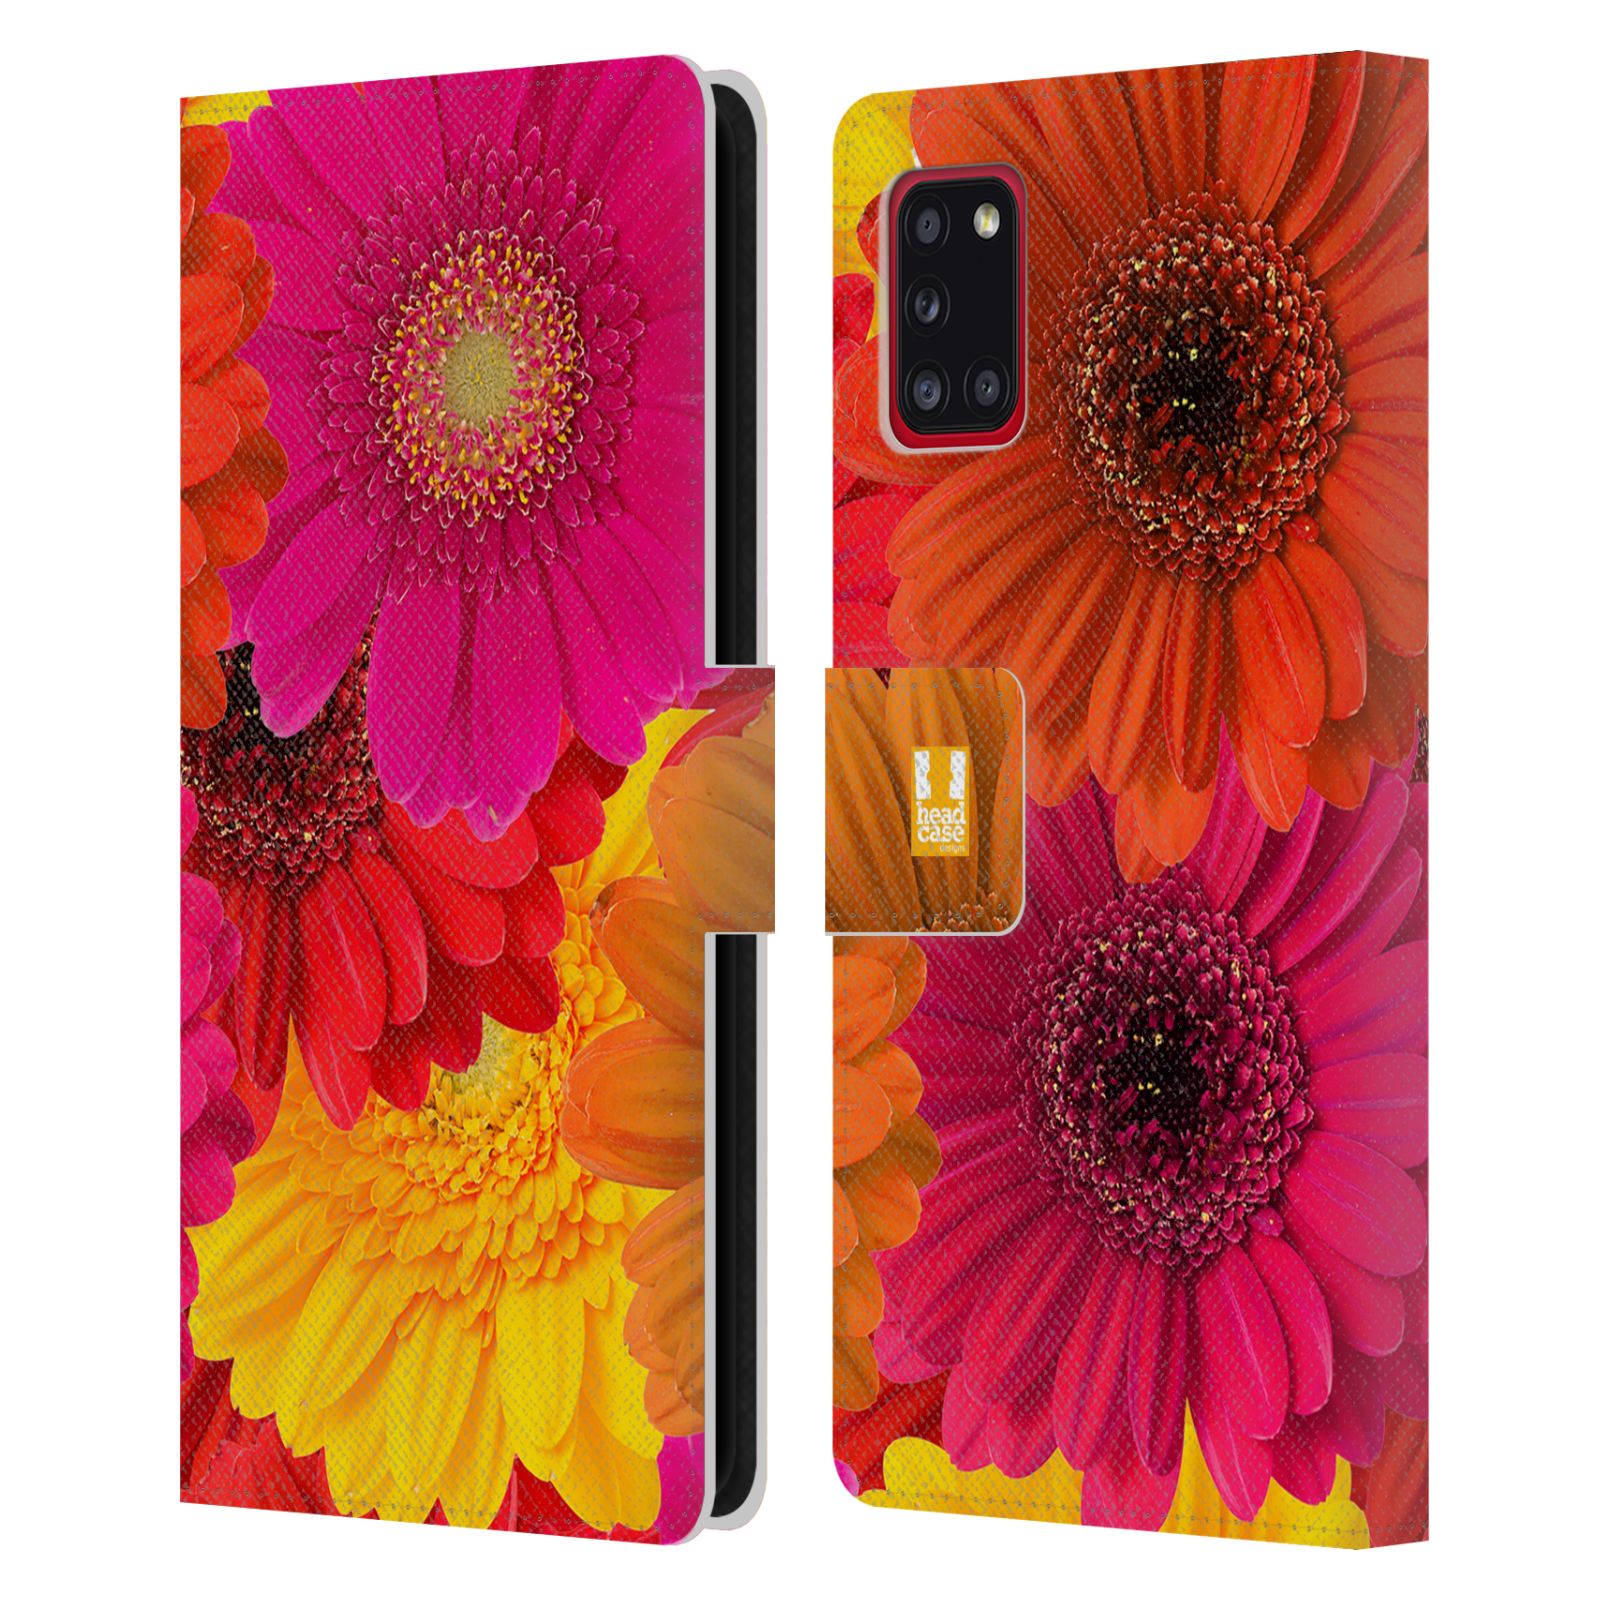 Pouzdro HEAD CASE na mobil Samsung Galaxy A31 květy foto fialová, oranžová GERBERA